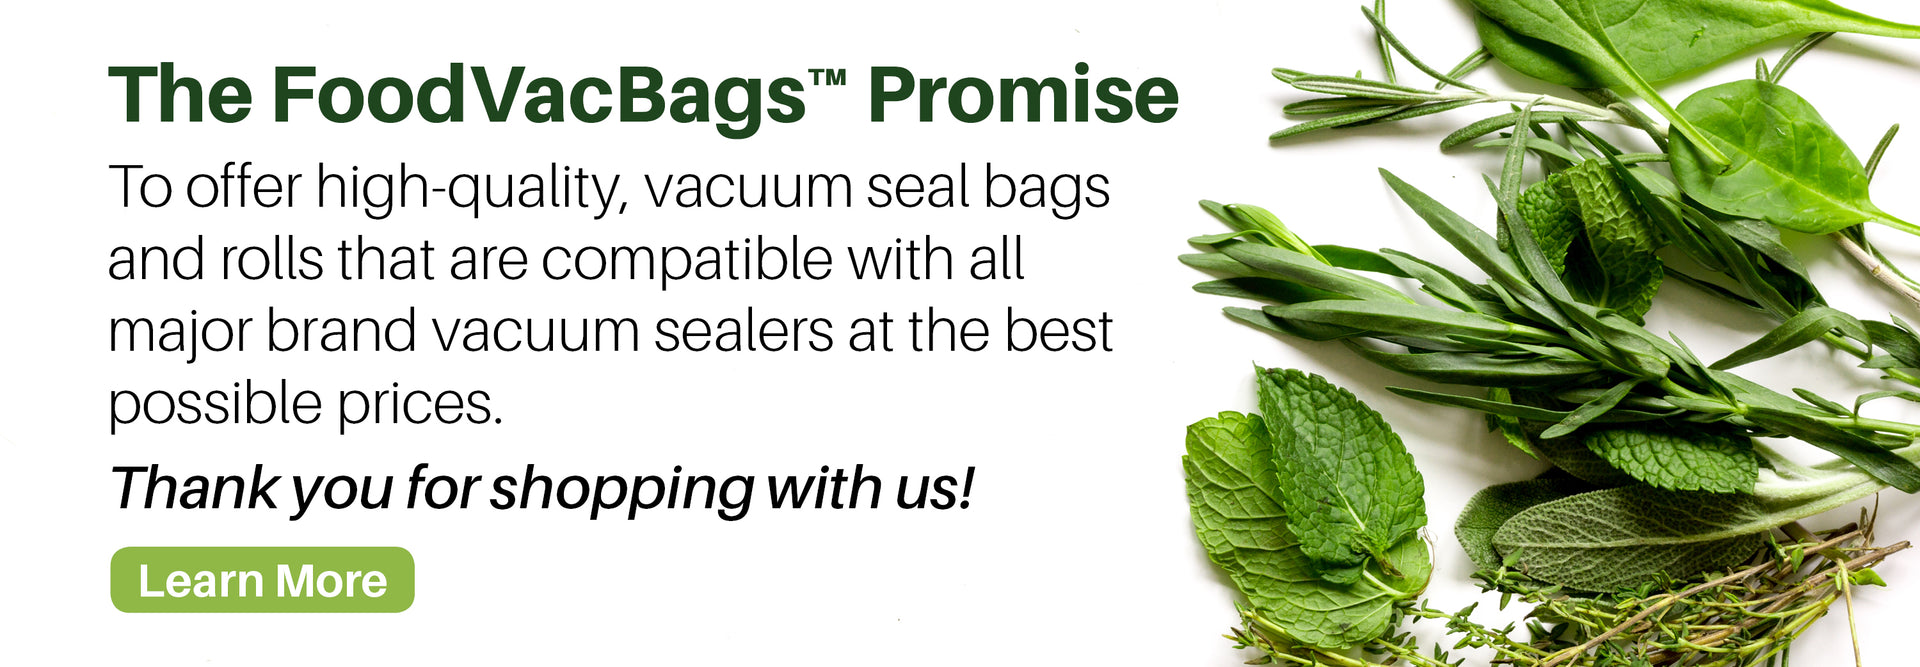 Sample FoodVacBags Vacuum Sealer Bags